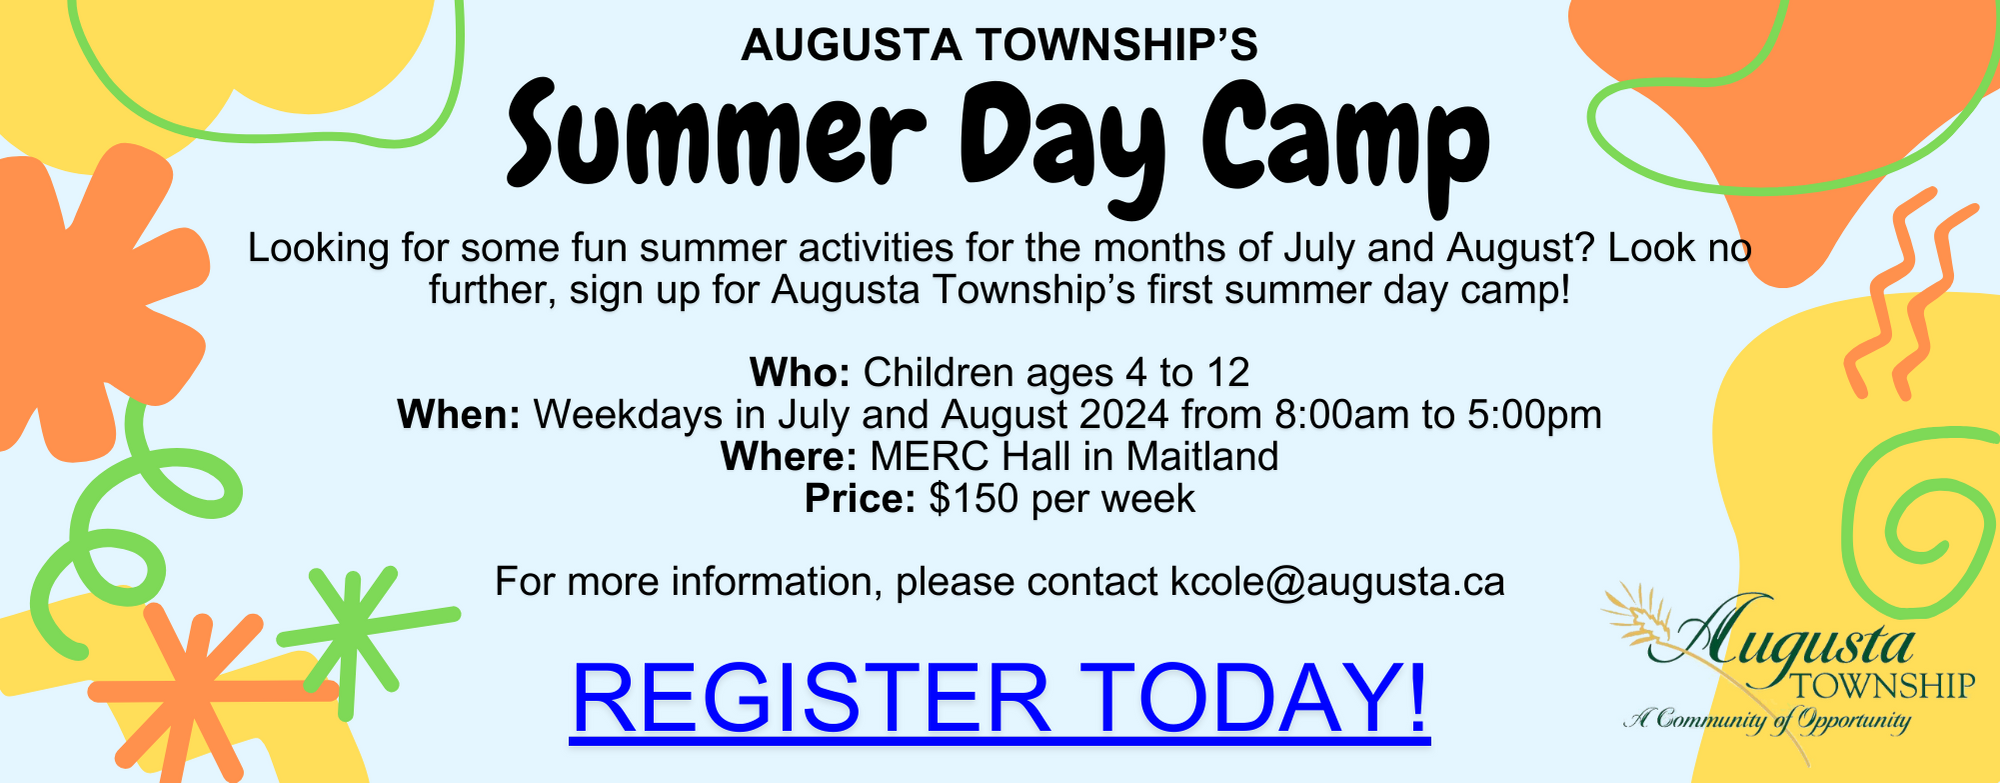 summer day camp registration poster